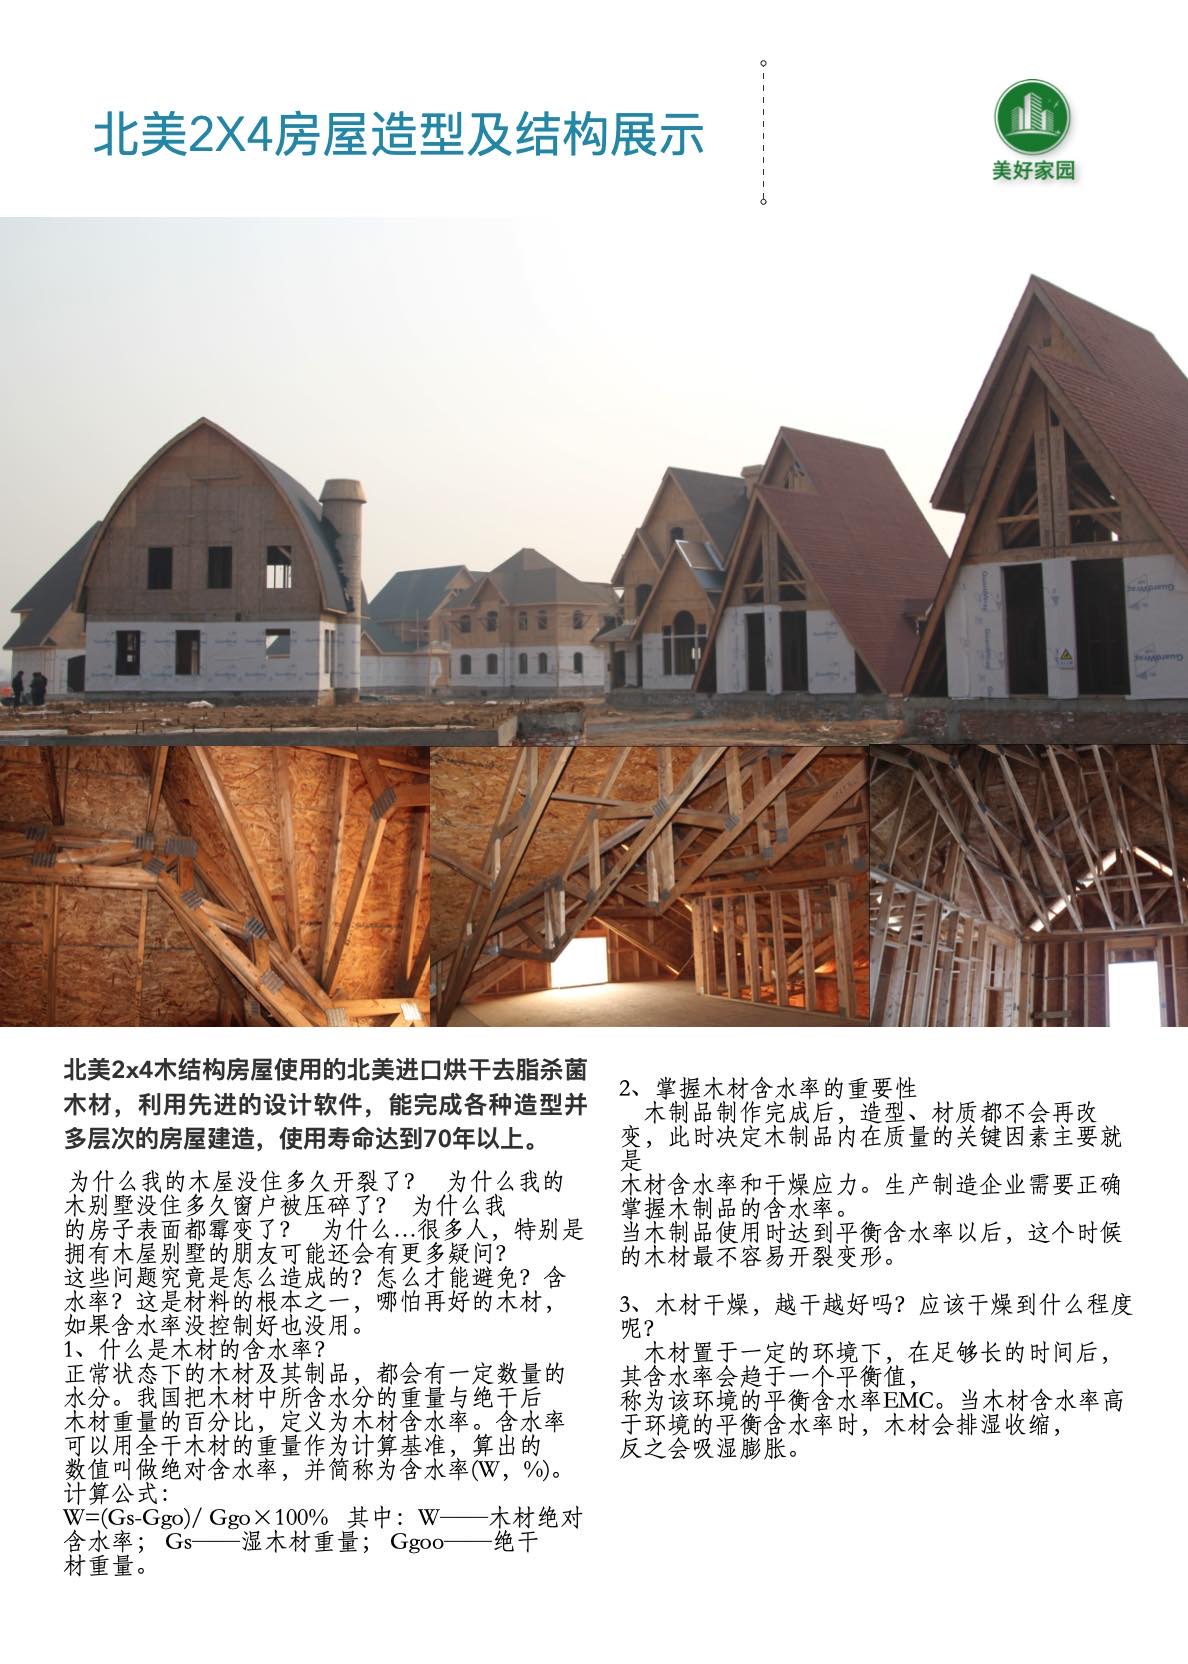 轻木/轻钢房屋工法(图5)